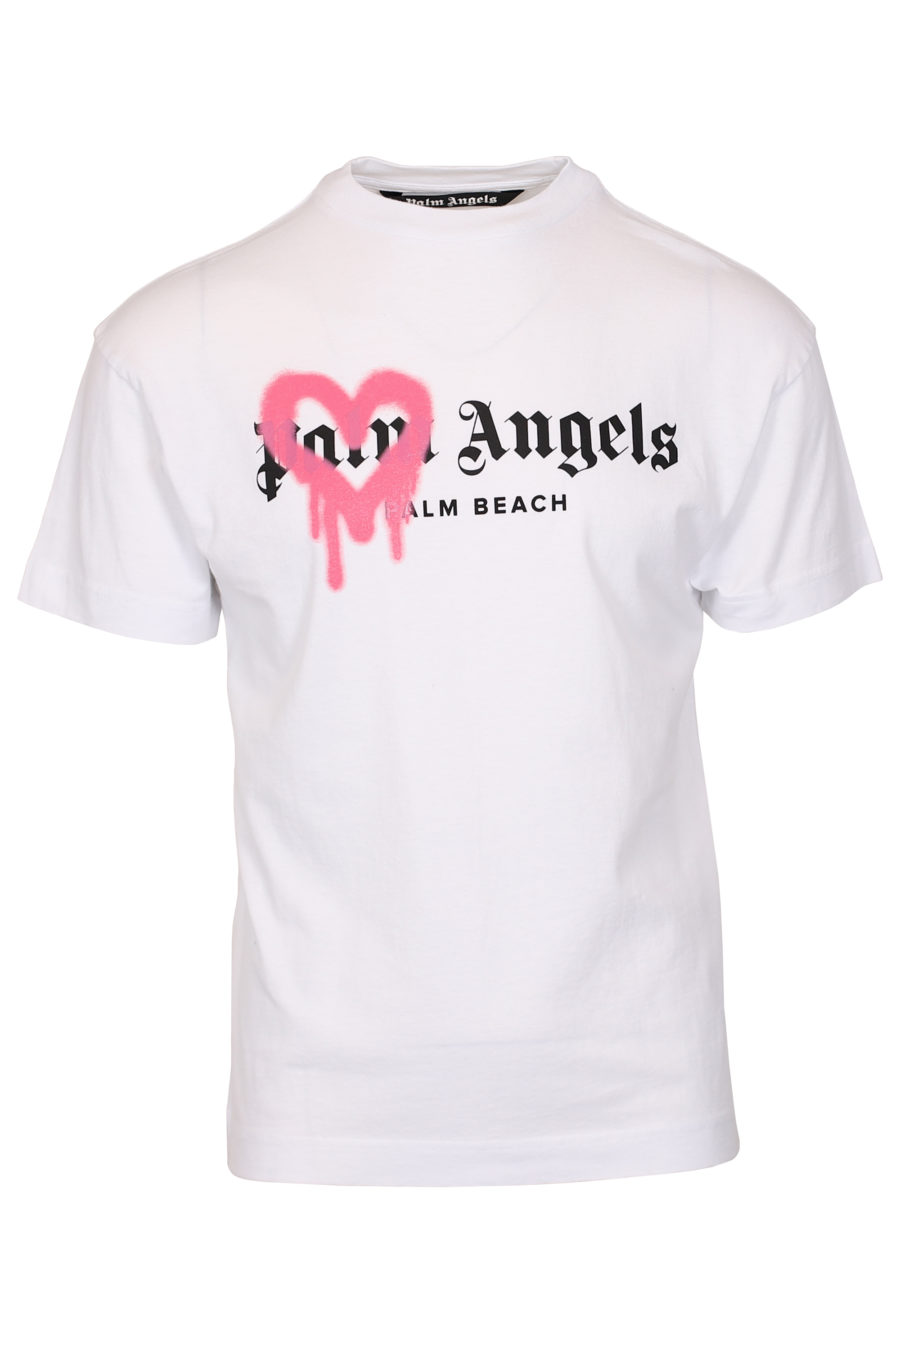 Camiseta blanca logotipo Palm Beach - IMG 1055